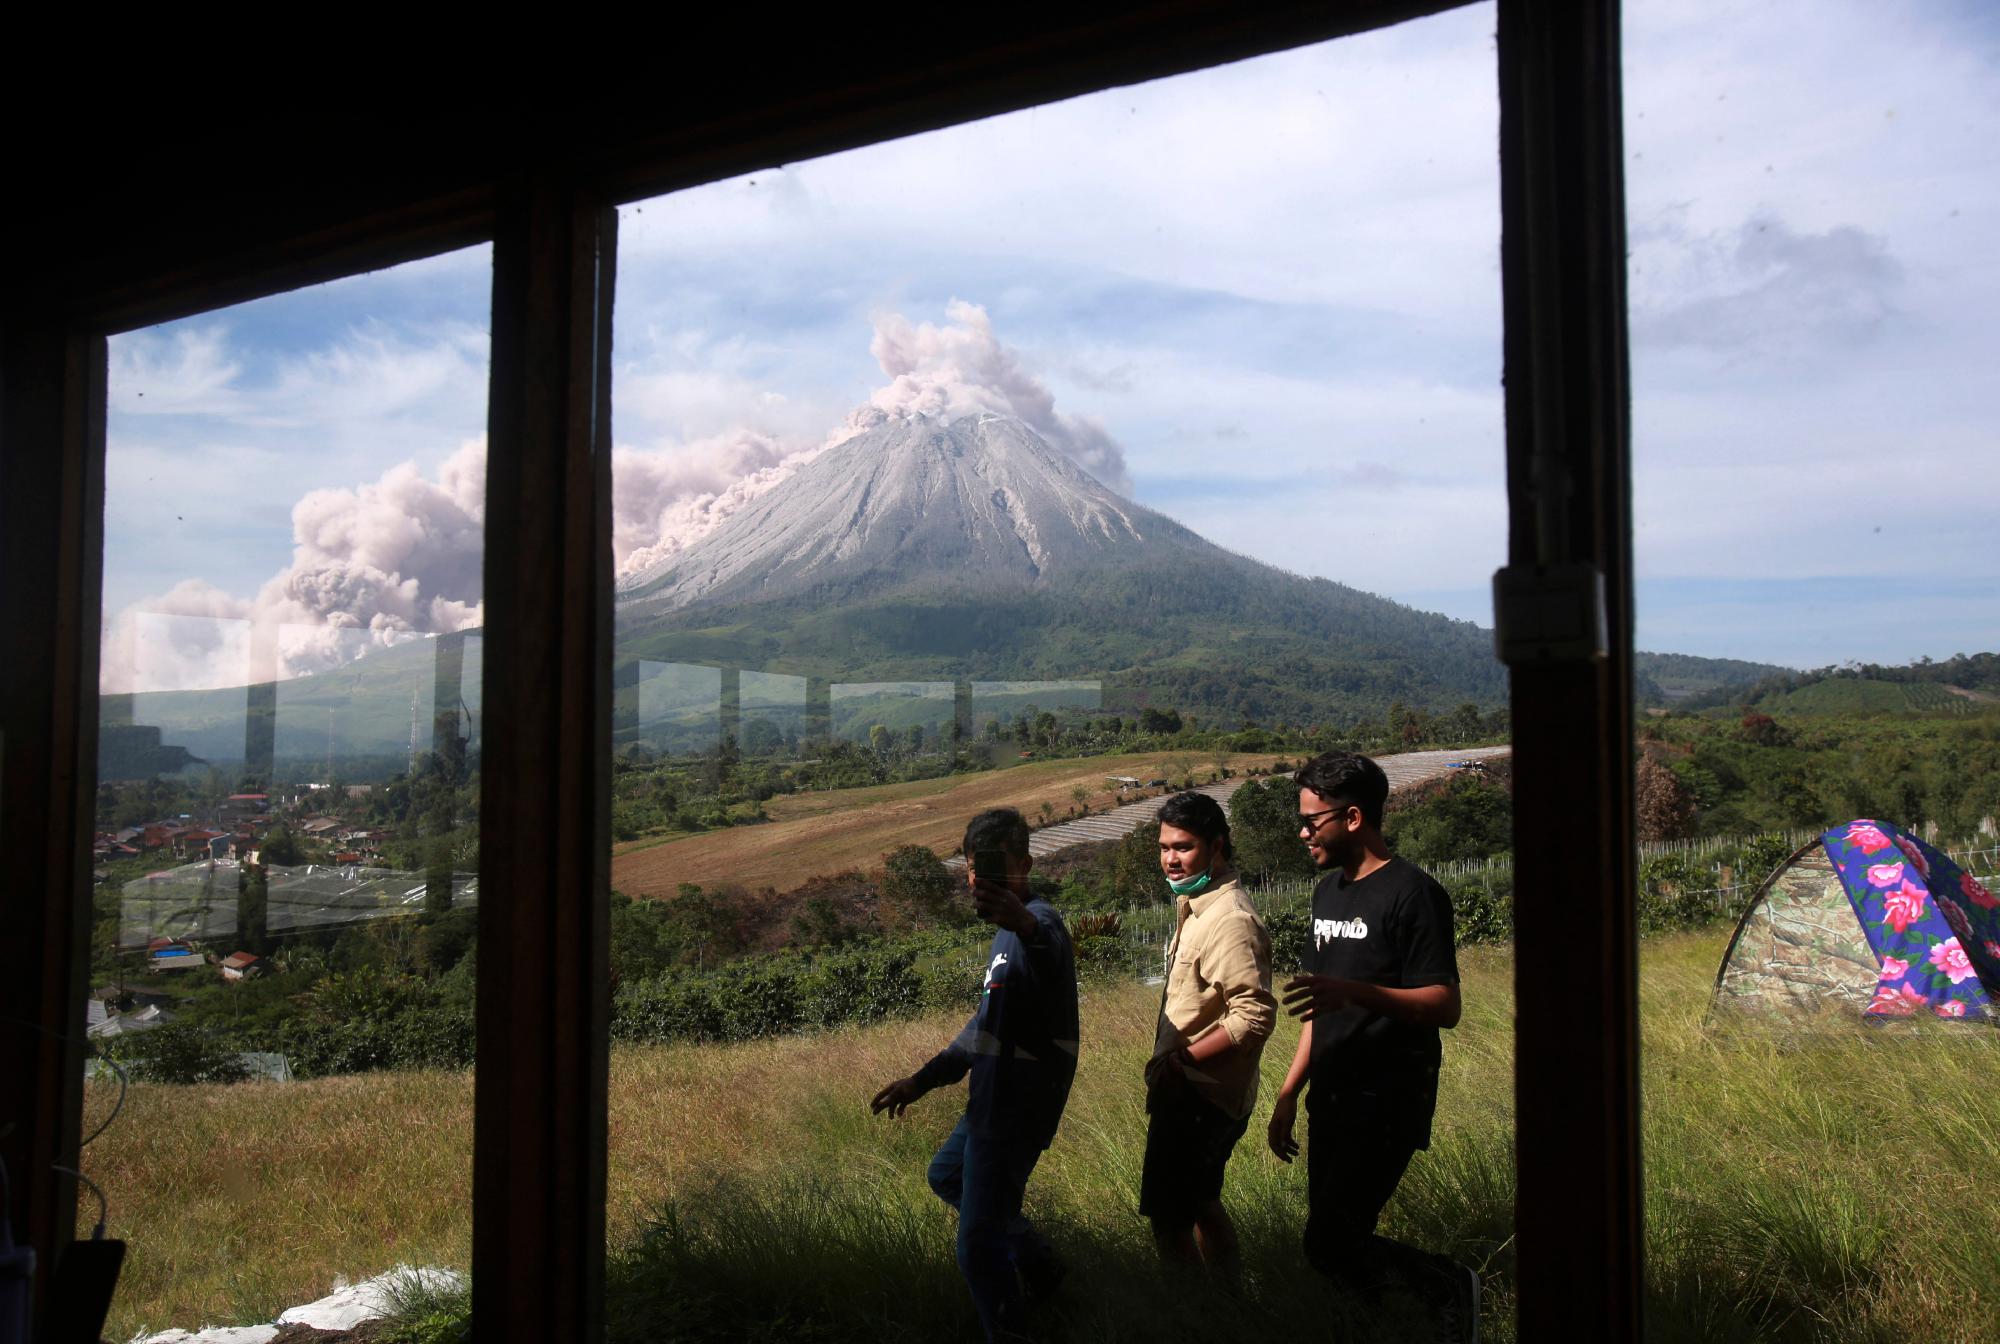 La gente pasa caminando mientras el Monte Sinabung arroja materiales volcánicos durante una erupción en Karo, en el norte de Sumatra, Indonesia, el jueves 11 de marzo de 2021. El volcán de 2.600 metros (8.530 pies) desató una avalancha de abrasadoras nubes de gas que fluían por sus laderas durante erupción el jueves. No se informó de víctimas.